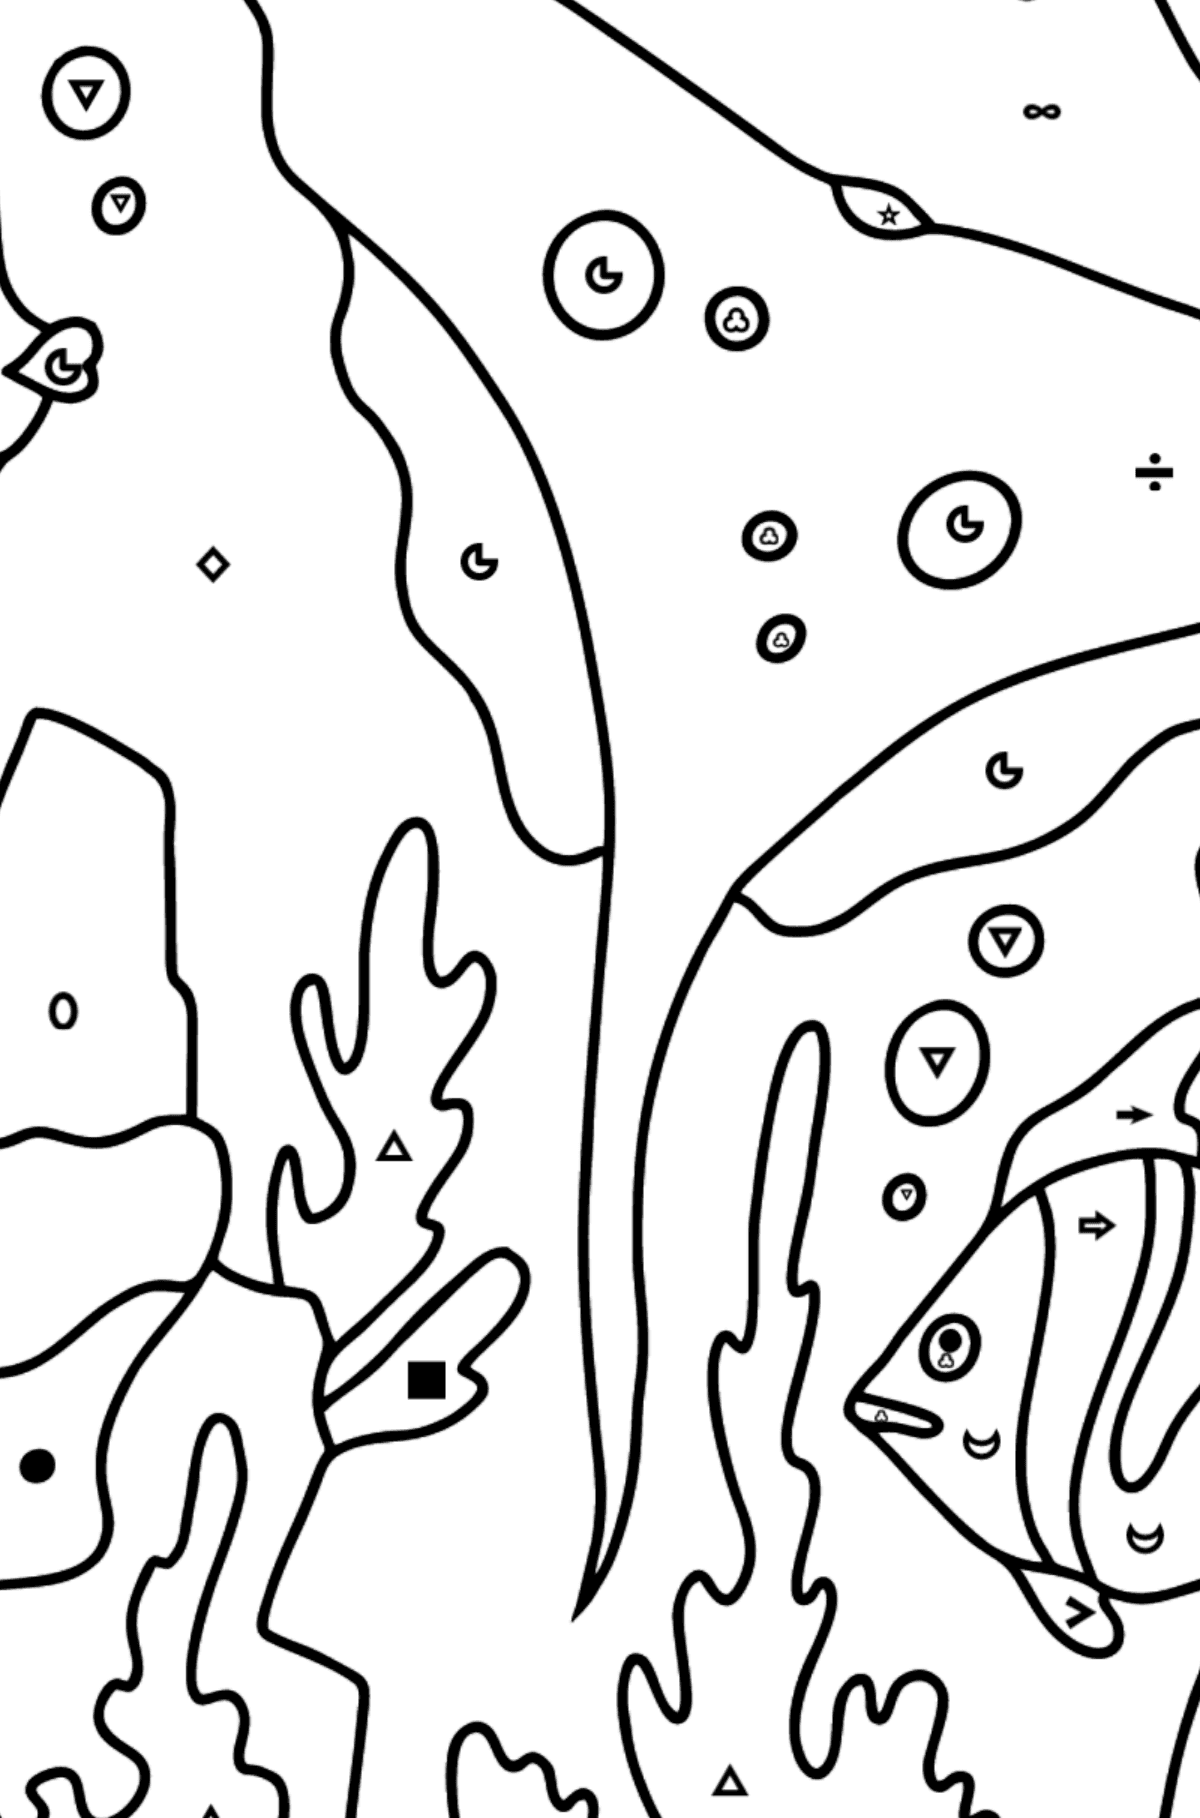 Målarbild fisk och en stingrocka (svår) - Färgläggning efter symboler och av geometriska figurer För barn